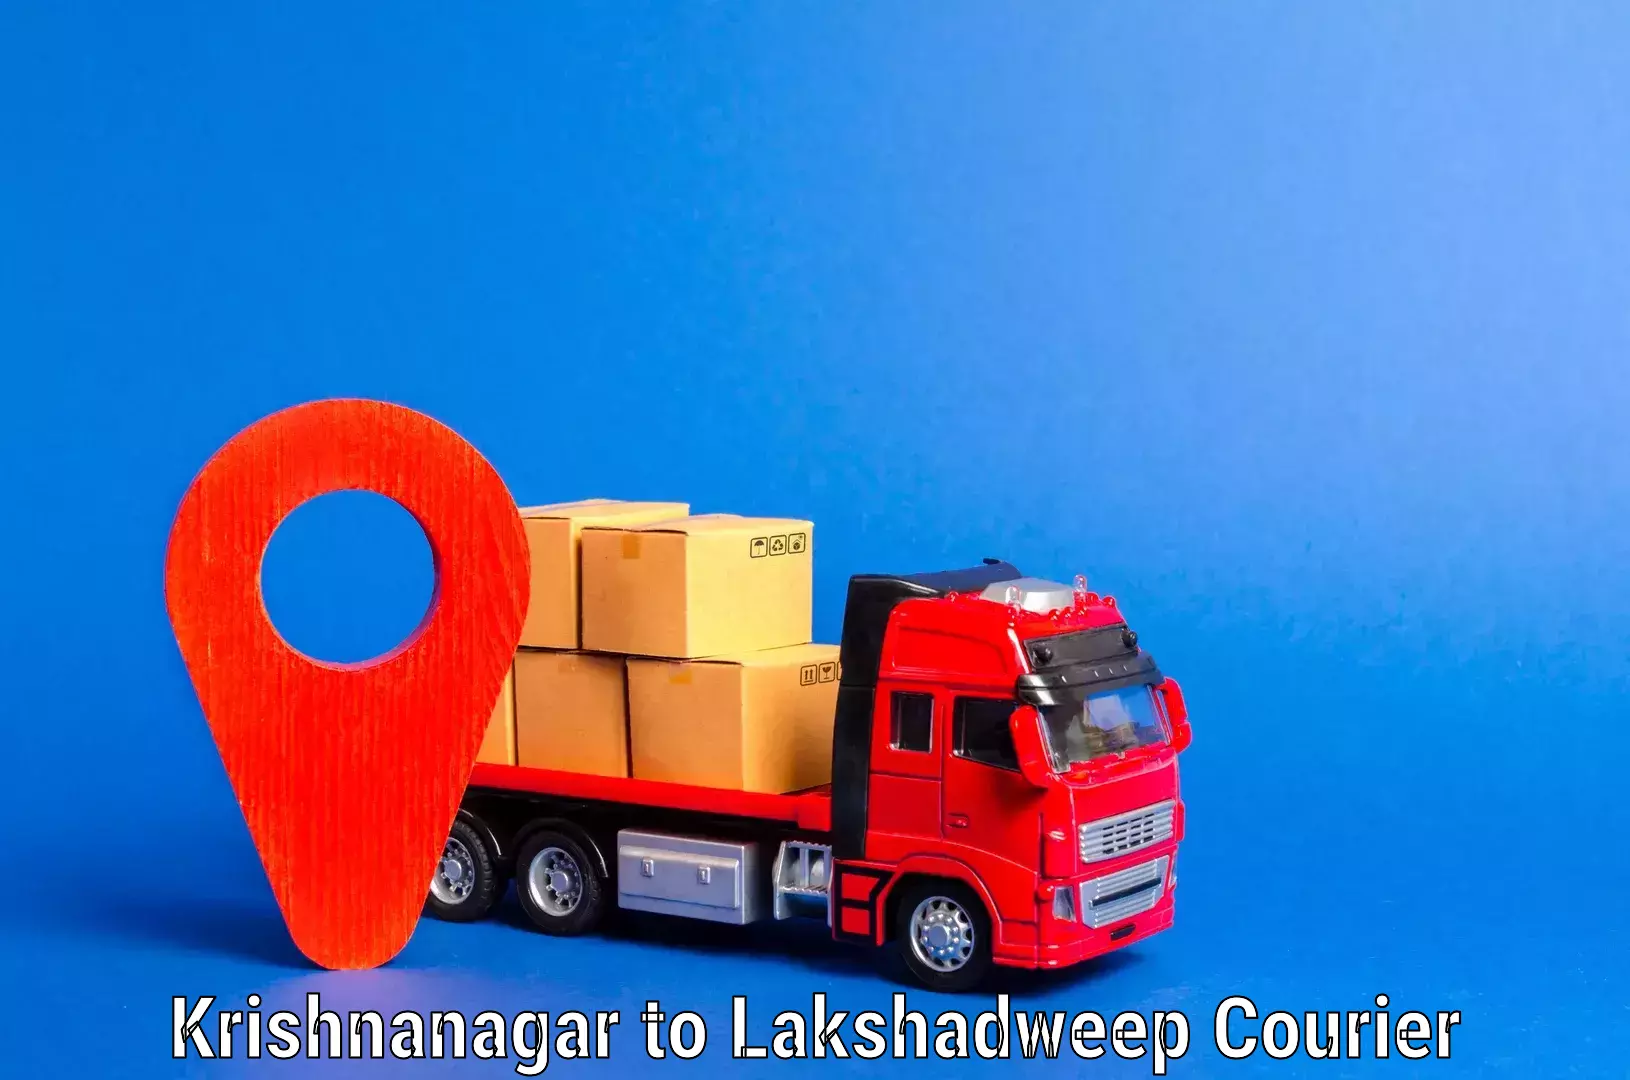 Furniture transport service Krishnanagar to Lakshadweep